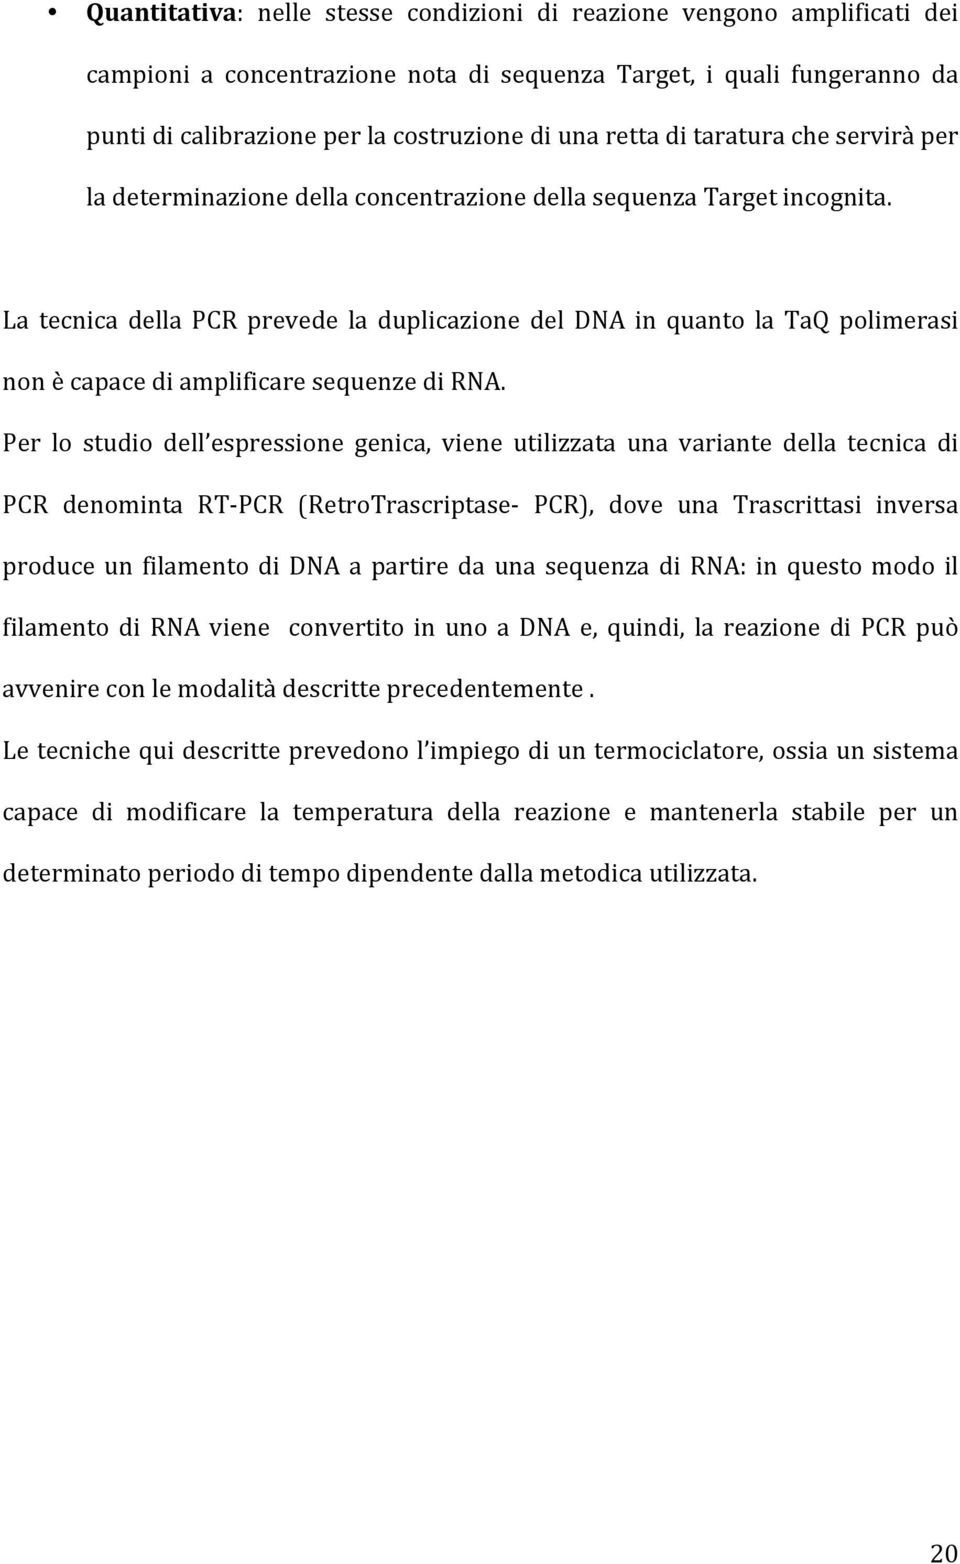 La tecnica della PCR prevede la duplicazione del DNA in quanto la TaQ polimerasi non è capace di amplificare sequenze di RNA.